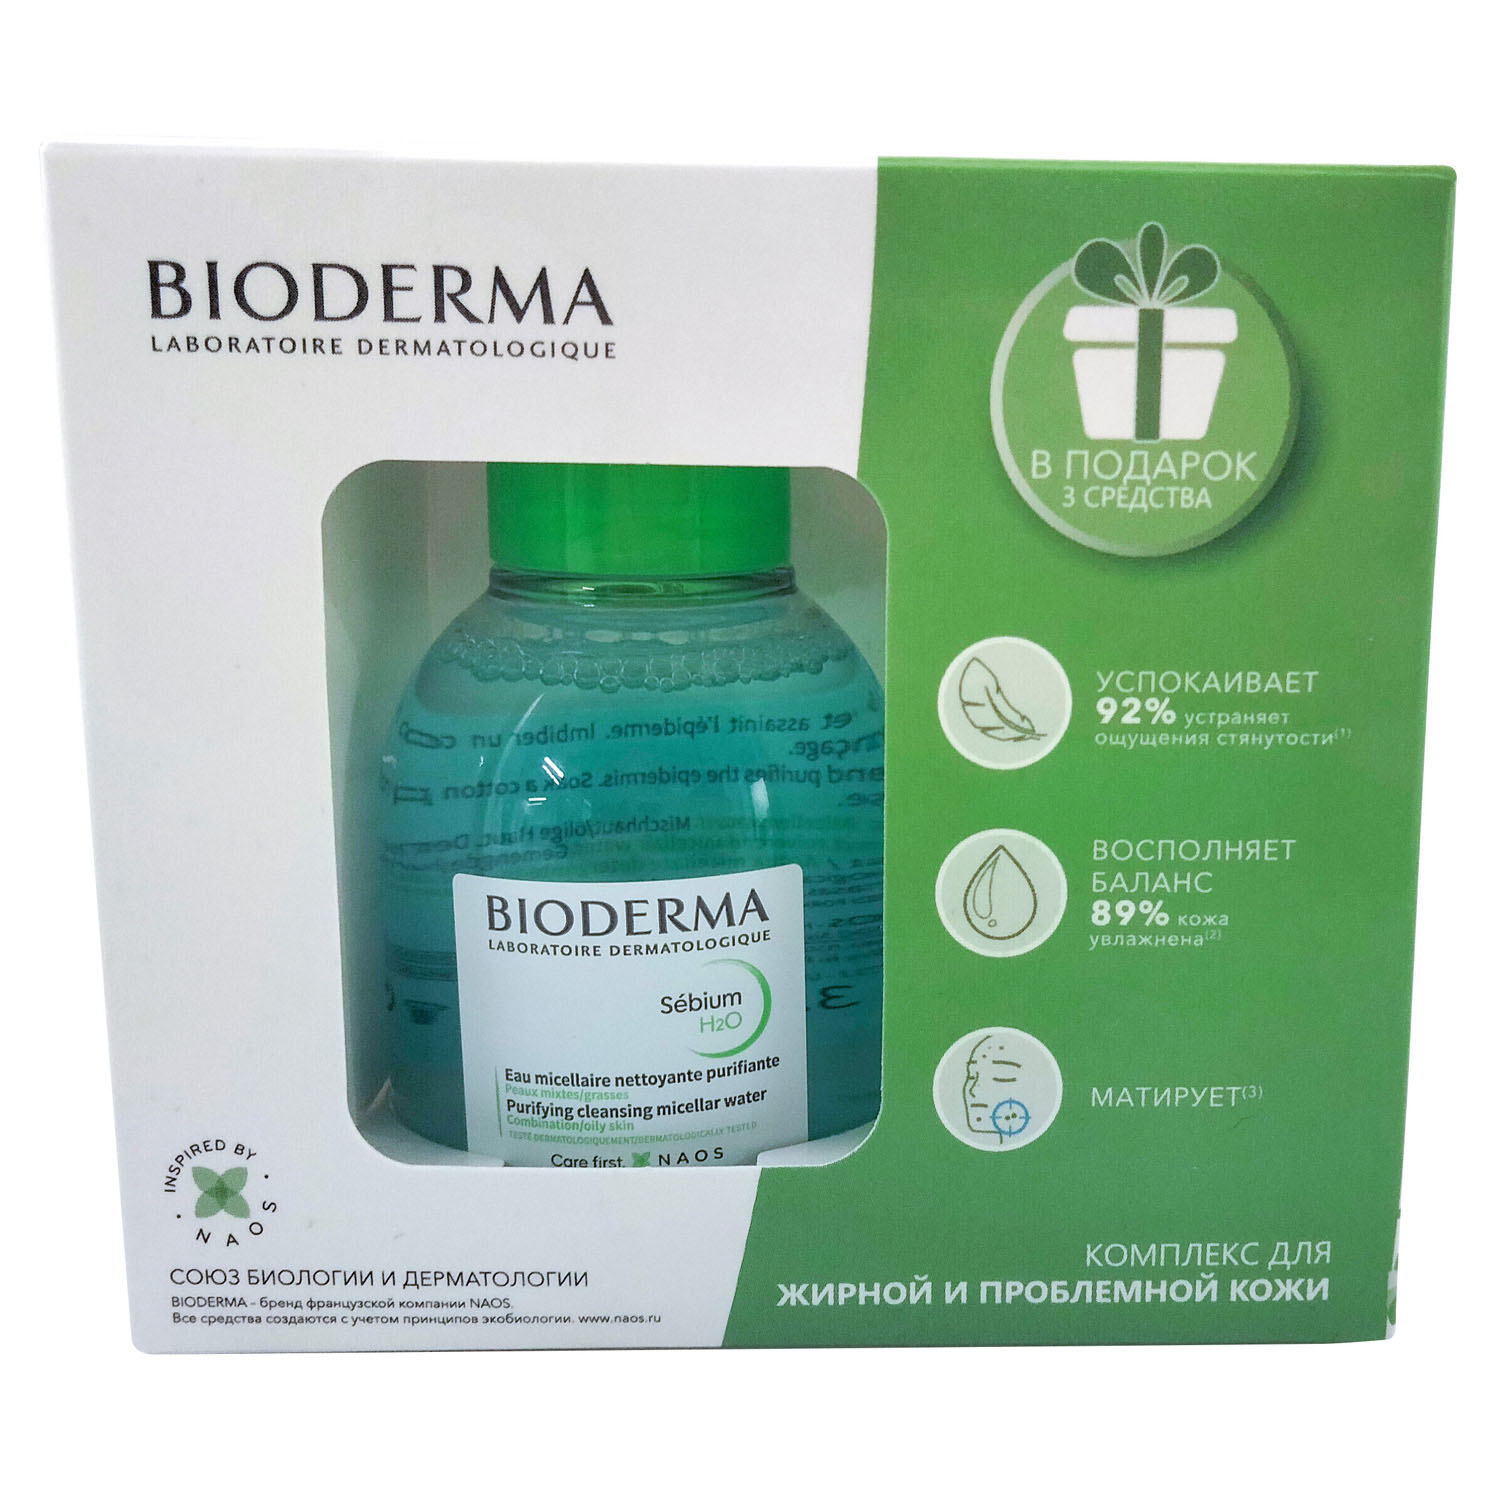 Bioderma Комплекс для жирной и комбинированной кожи: мицеллярная вода 100 мл + крем 5 мл + гель 8 мл + лосьон 10 мл (Bioderma, Sebium)